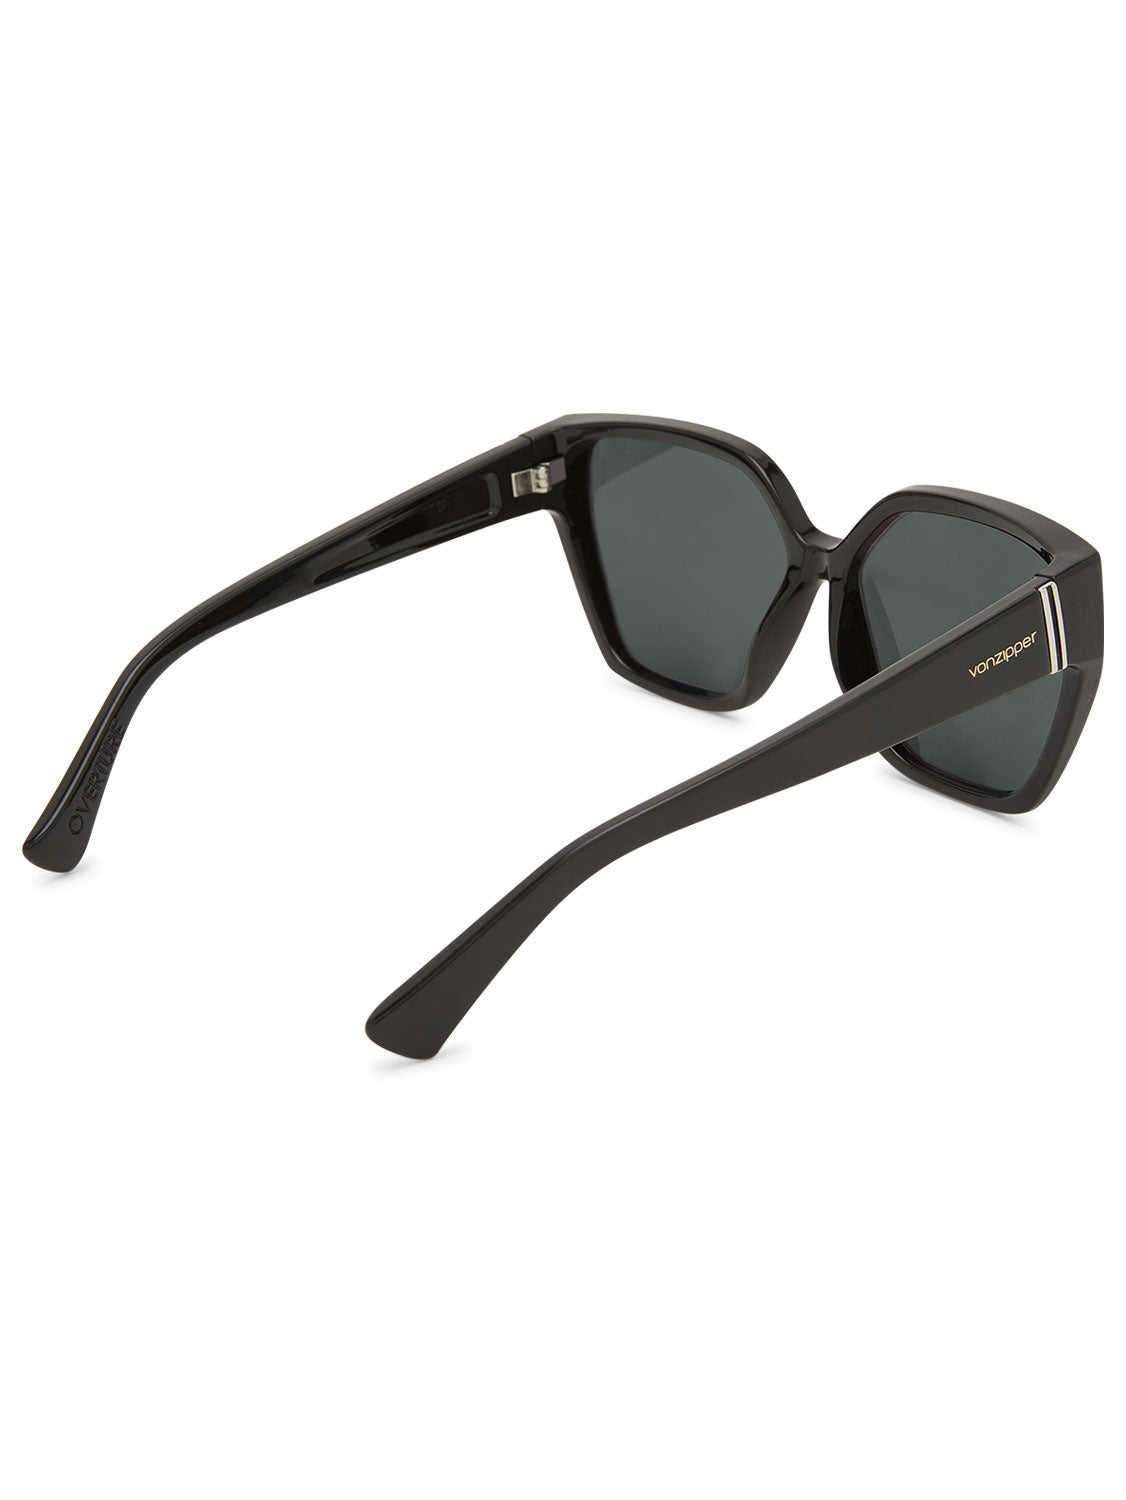 VonZipper Ladies Overture Sunglasses